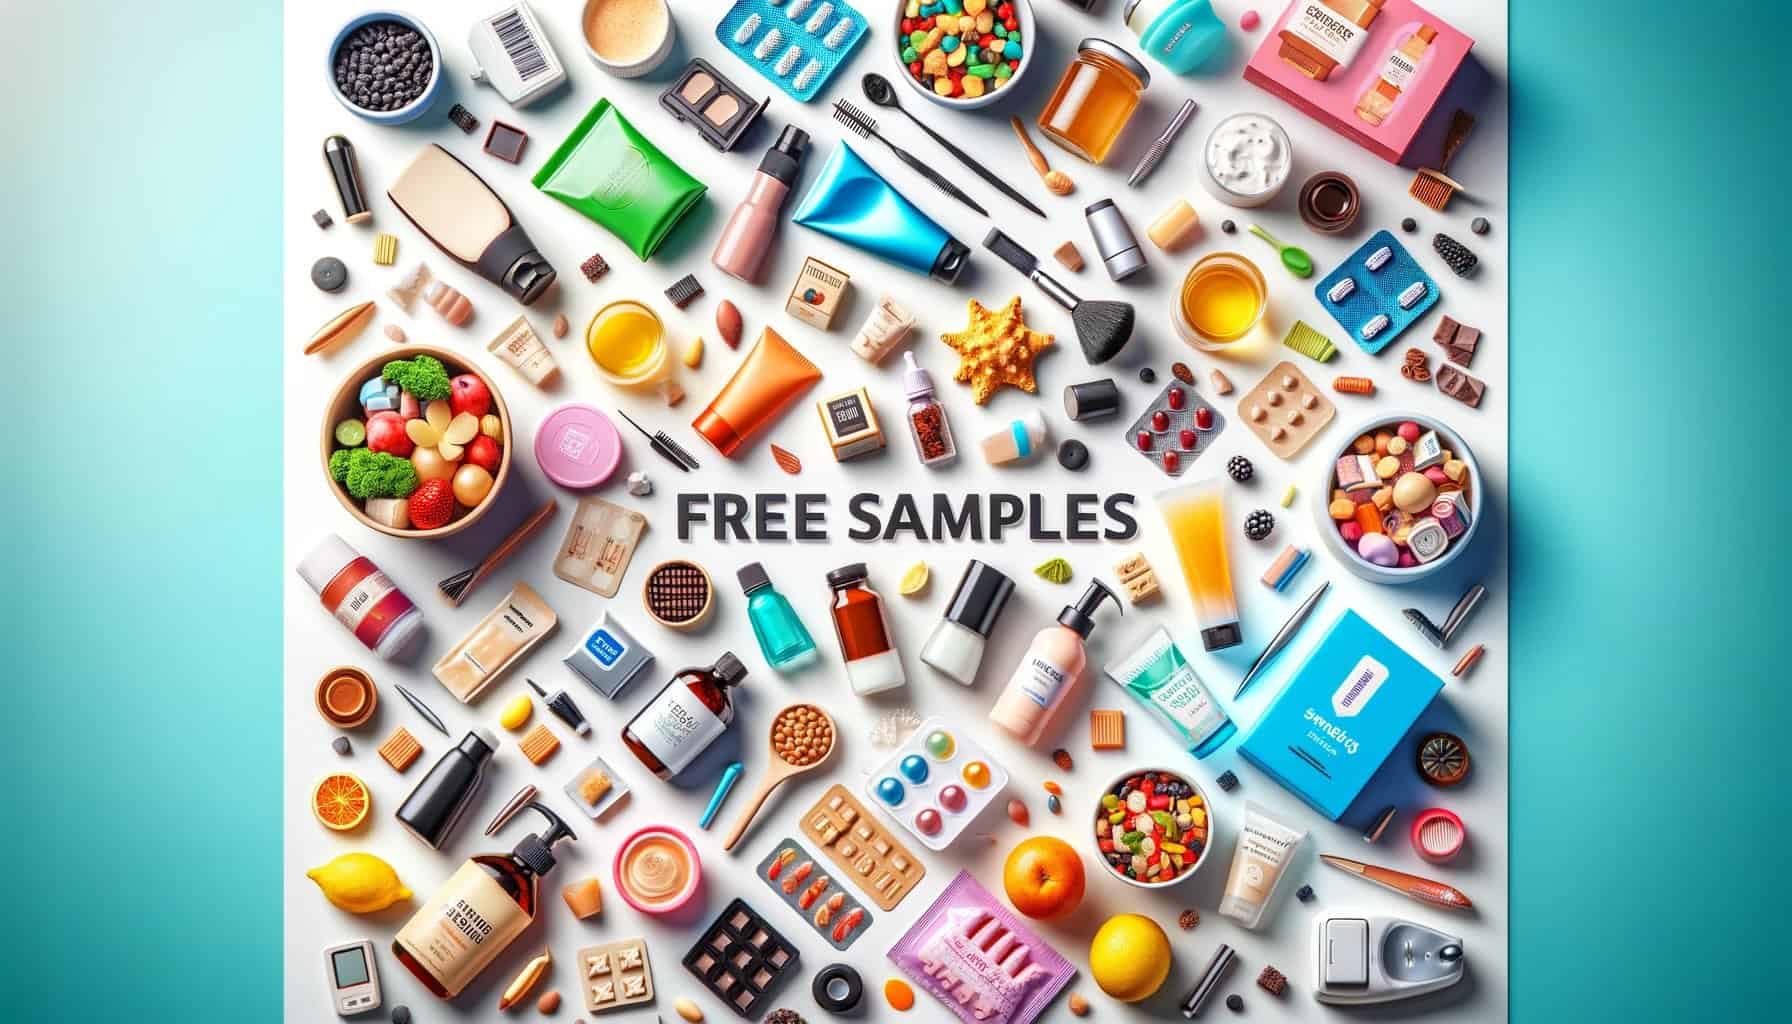 Freebie samples online